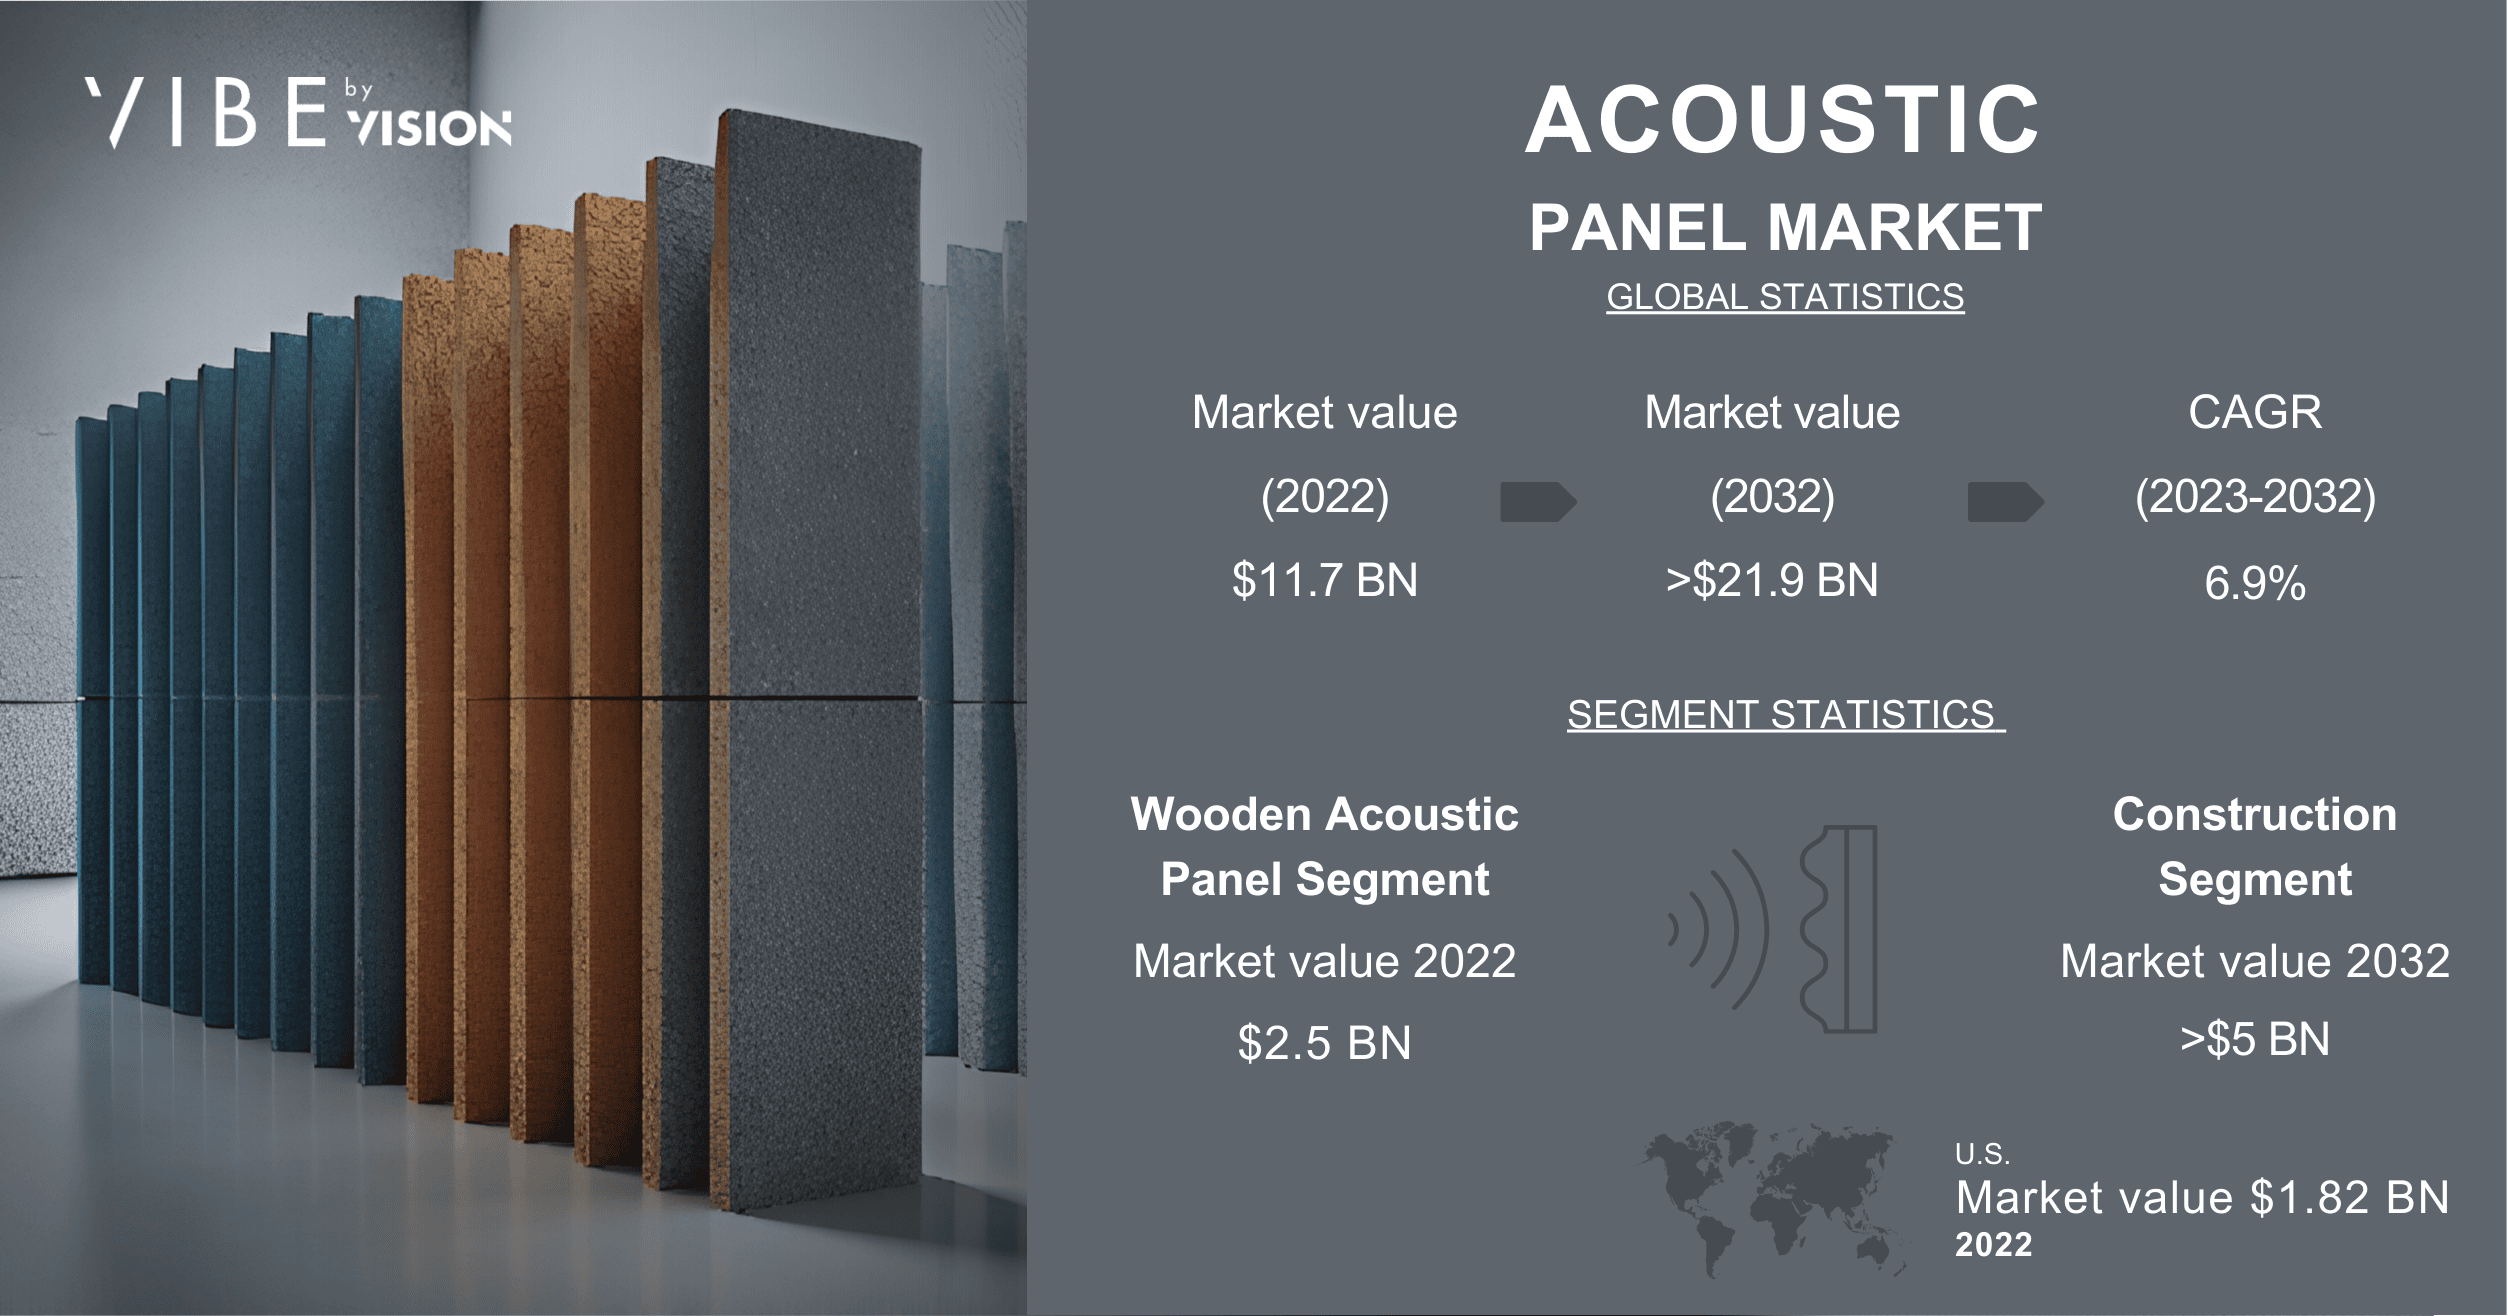 Acoustic Panels Market value